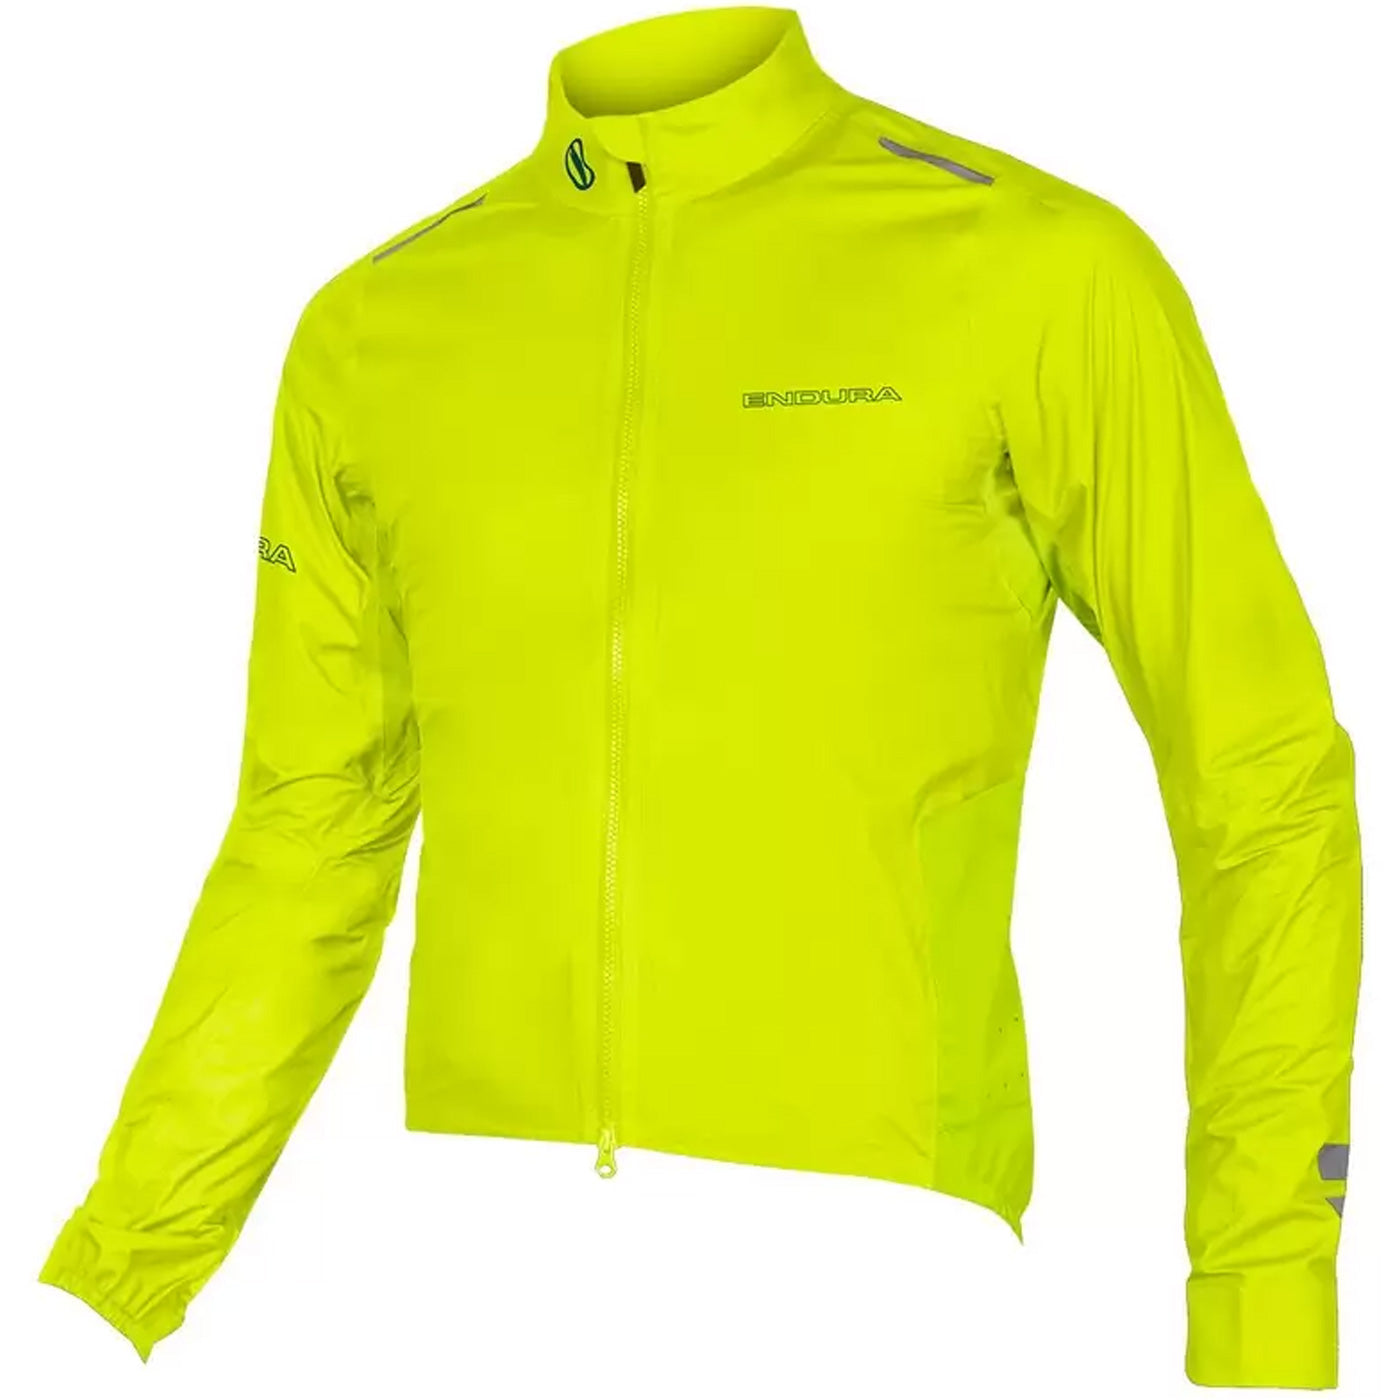 Endura Pro Sl Waterproof Shell jacket - Yellow | All4cycling